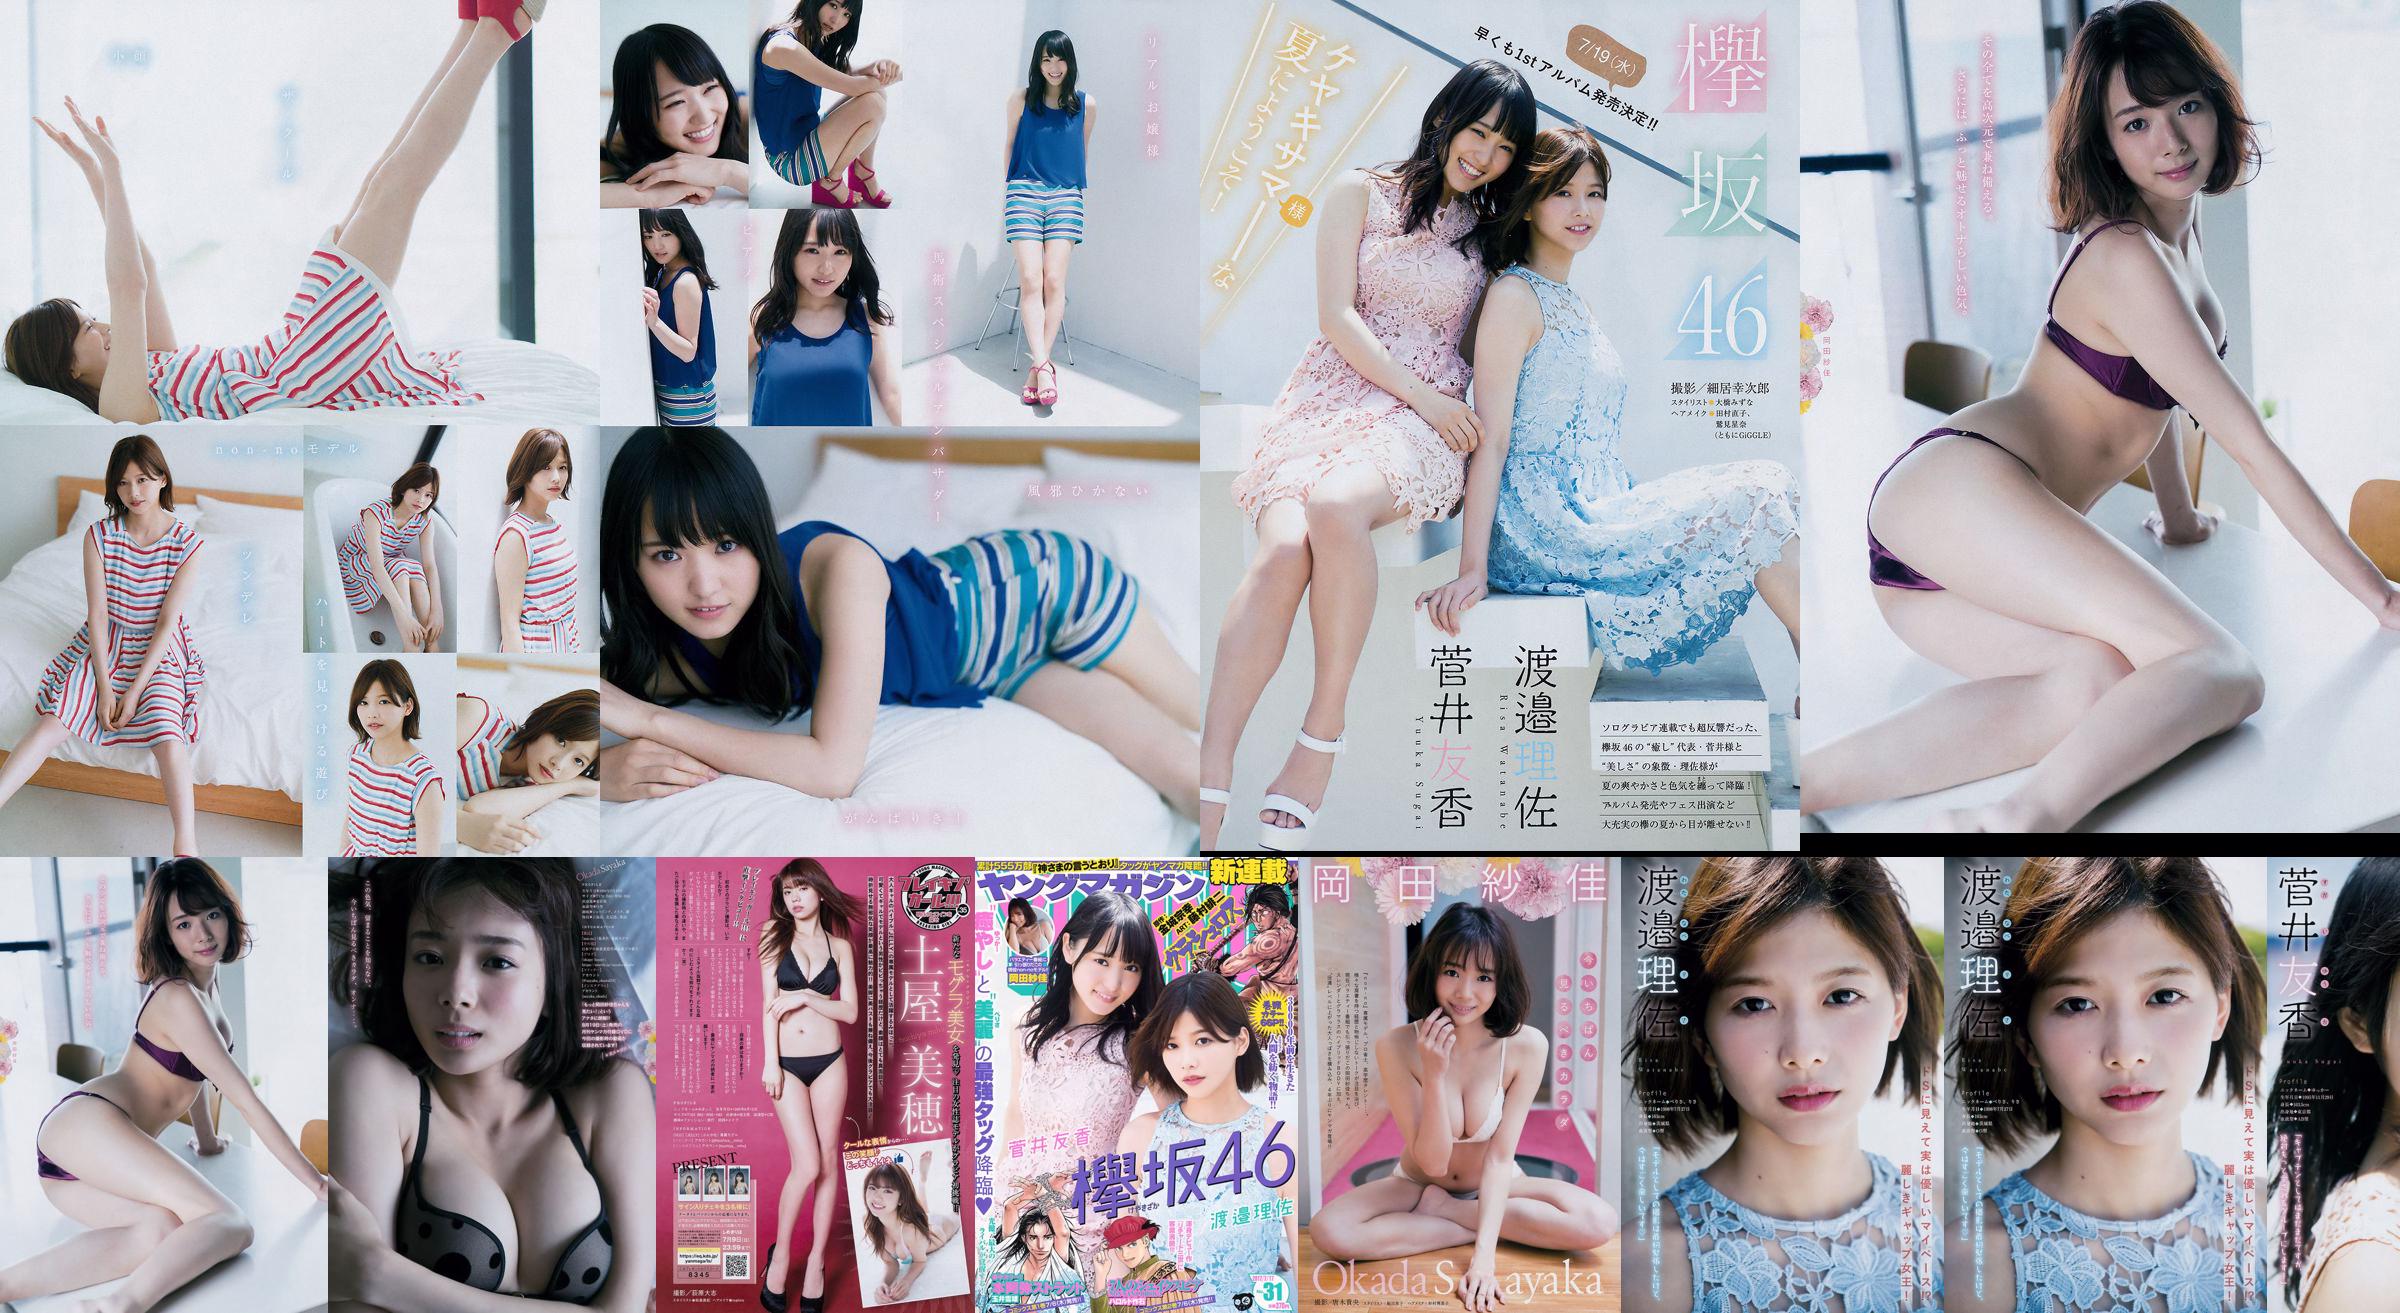 [Young Magazine] Watanabe Risa, Sugai Yuka, Okada Saika 2017 nr 31 Photo Magazine No.f608aa Strona 1